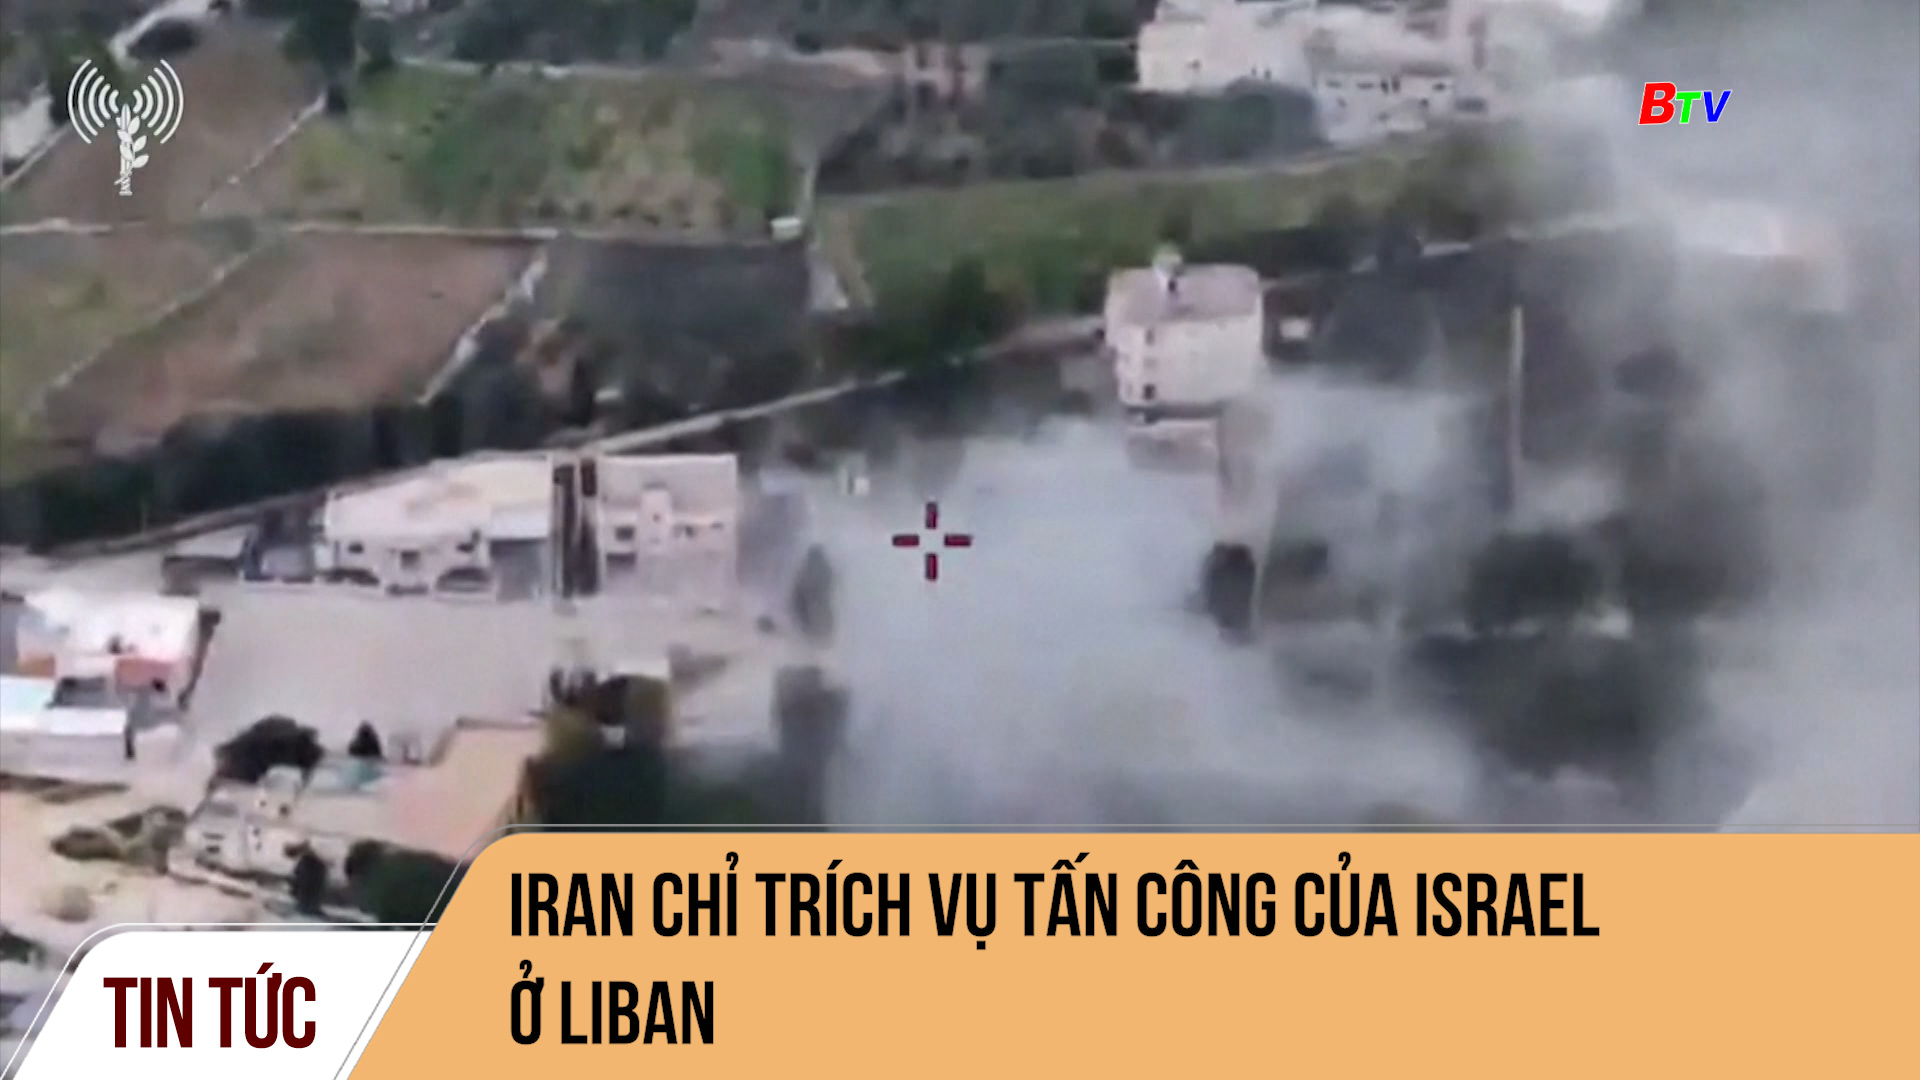 Iran chỉ trích vụ tấn công của Israel ở Liban 